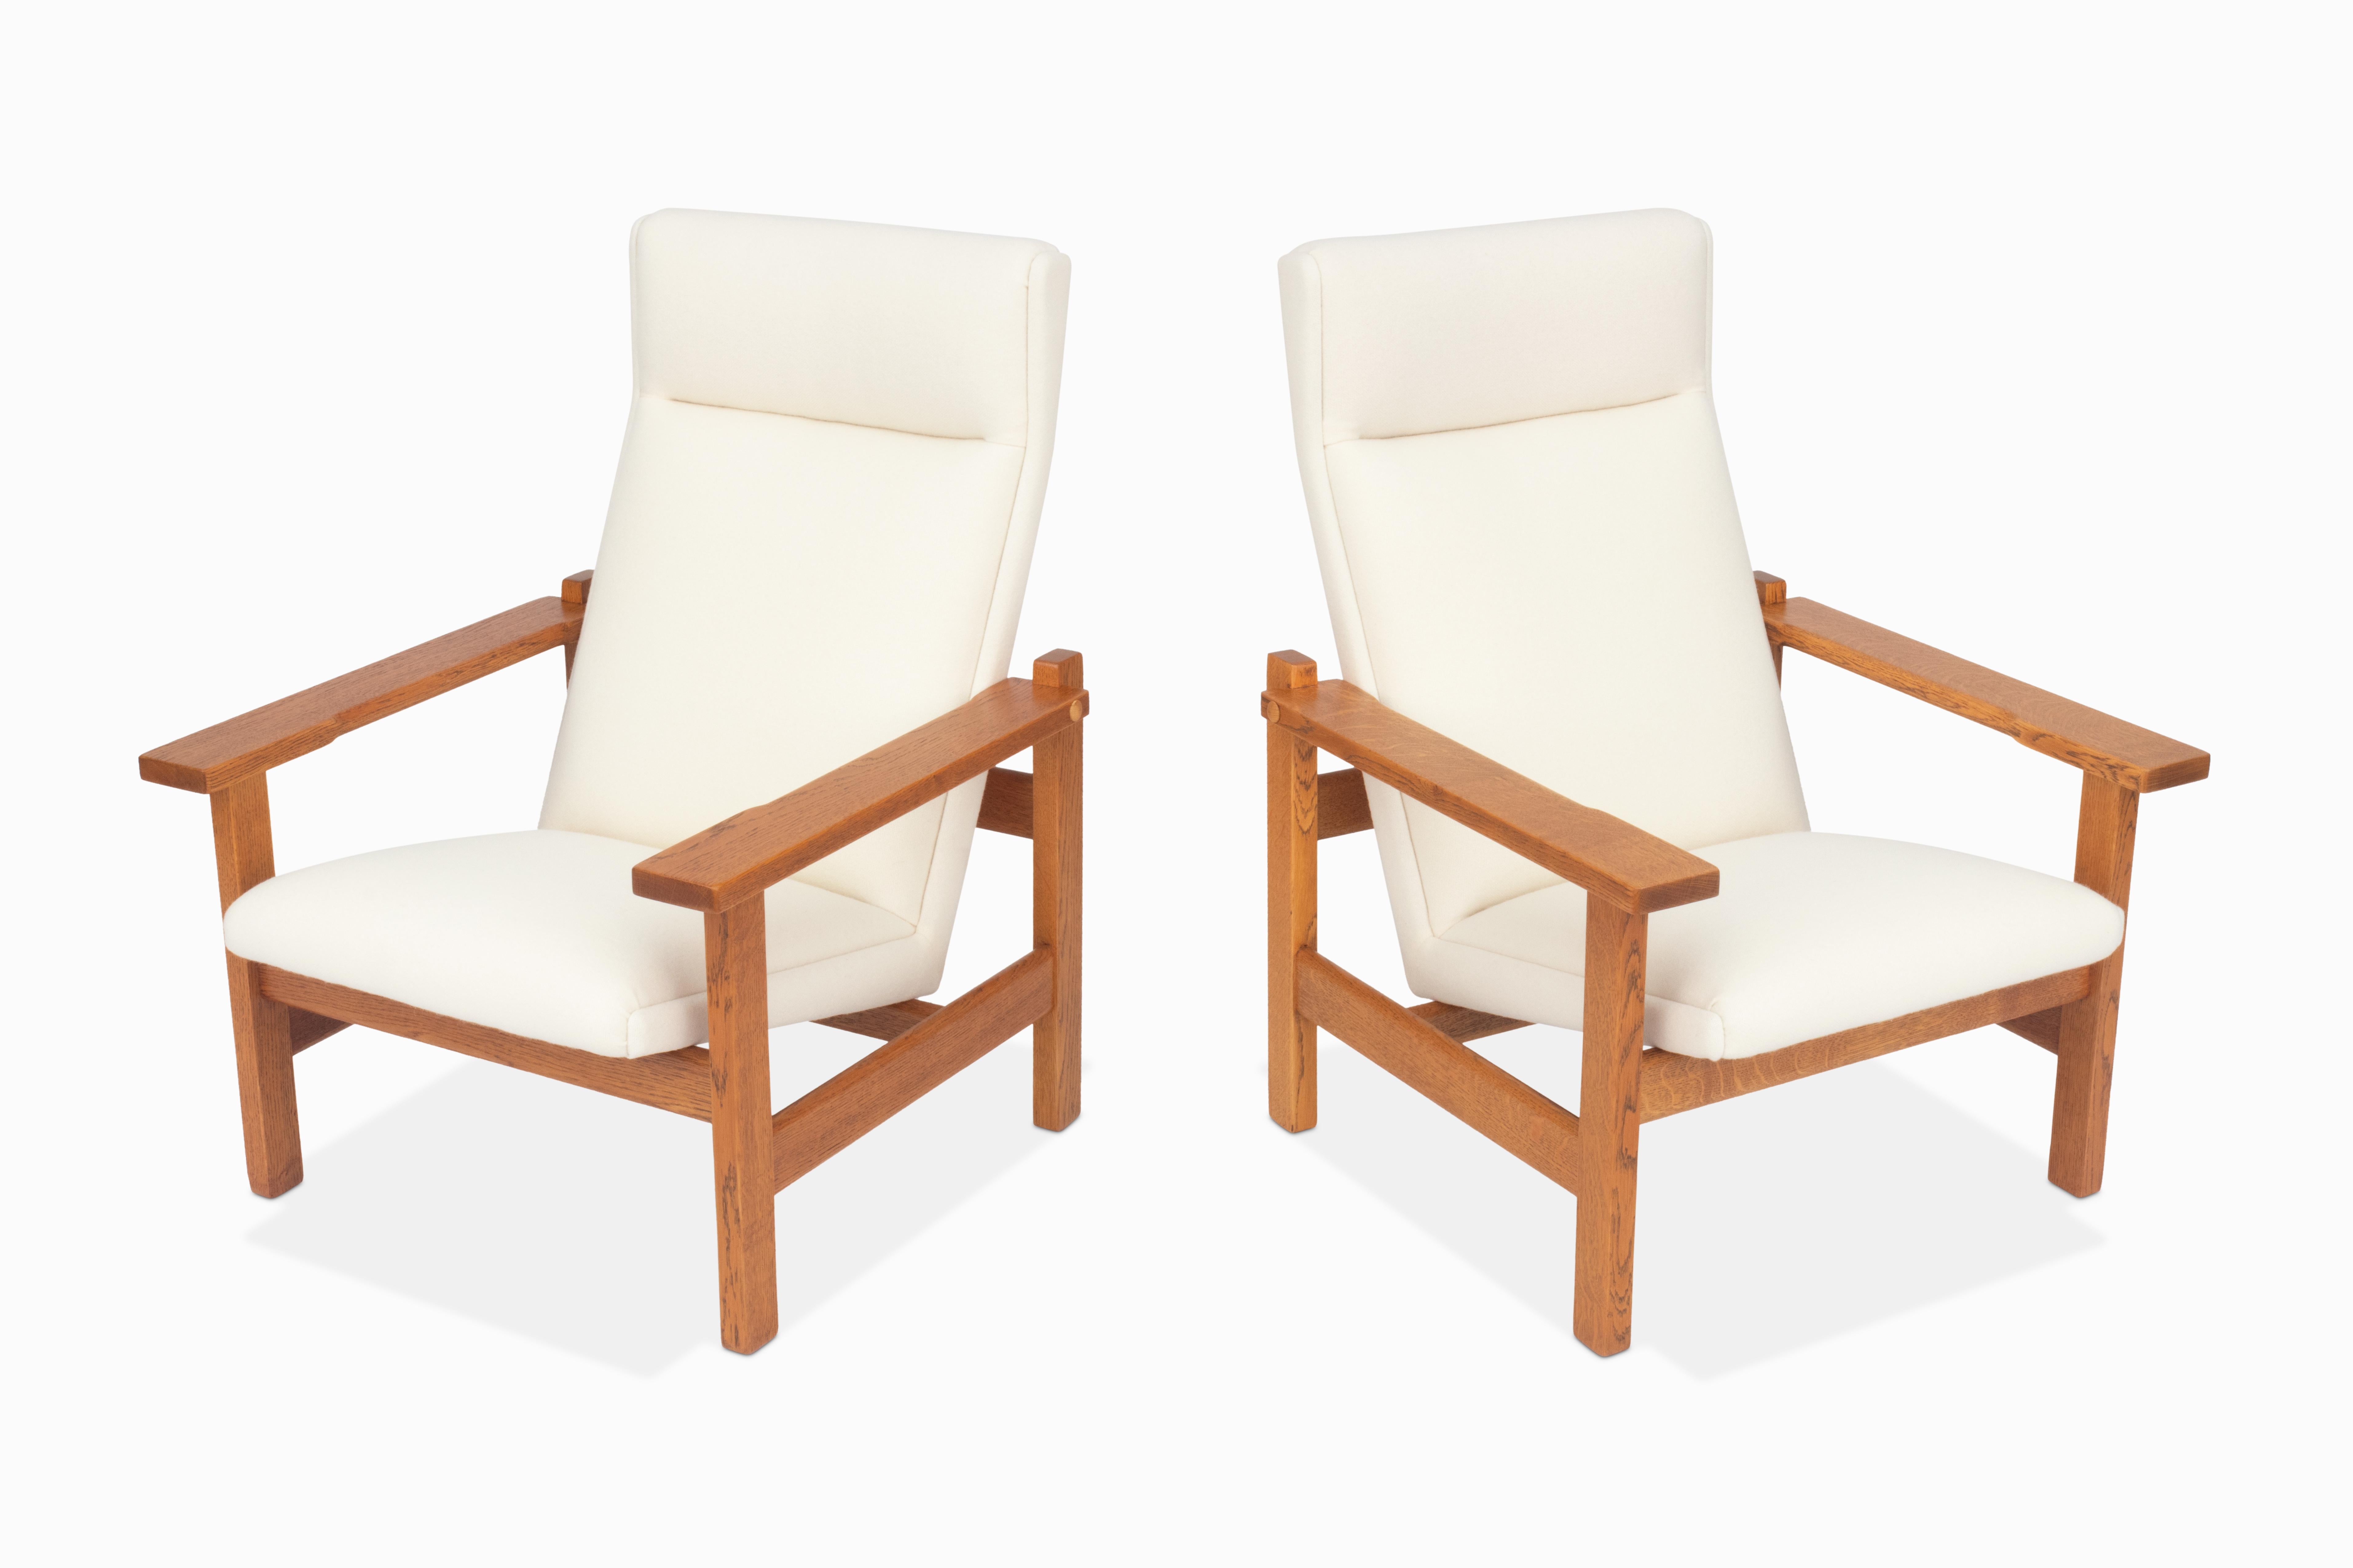 Hier ist ein Paar großer Hochlehner-Sessel von Hans Wegner. Diese Stühle sind ebenso schön wie selten! Sehr ungewöhnlich in den Vereinigten Staaten. Sie verfügen über wunderschöne, viertelseitig gesägte Eichenholzrahmen und neue Kvadrat